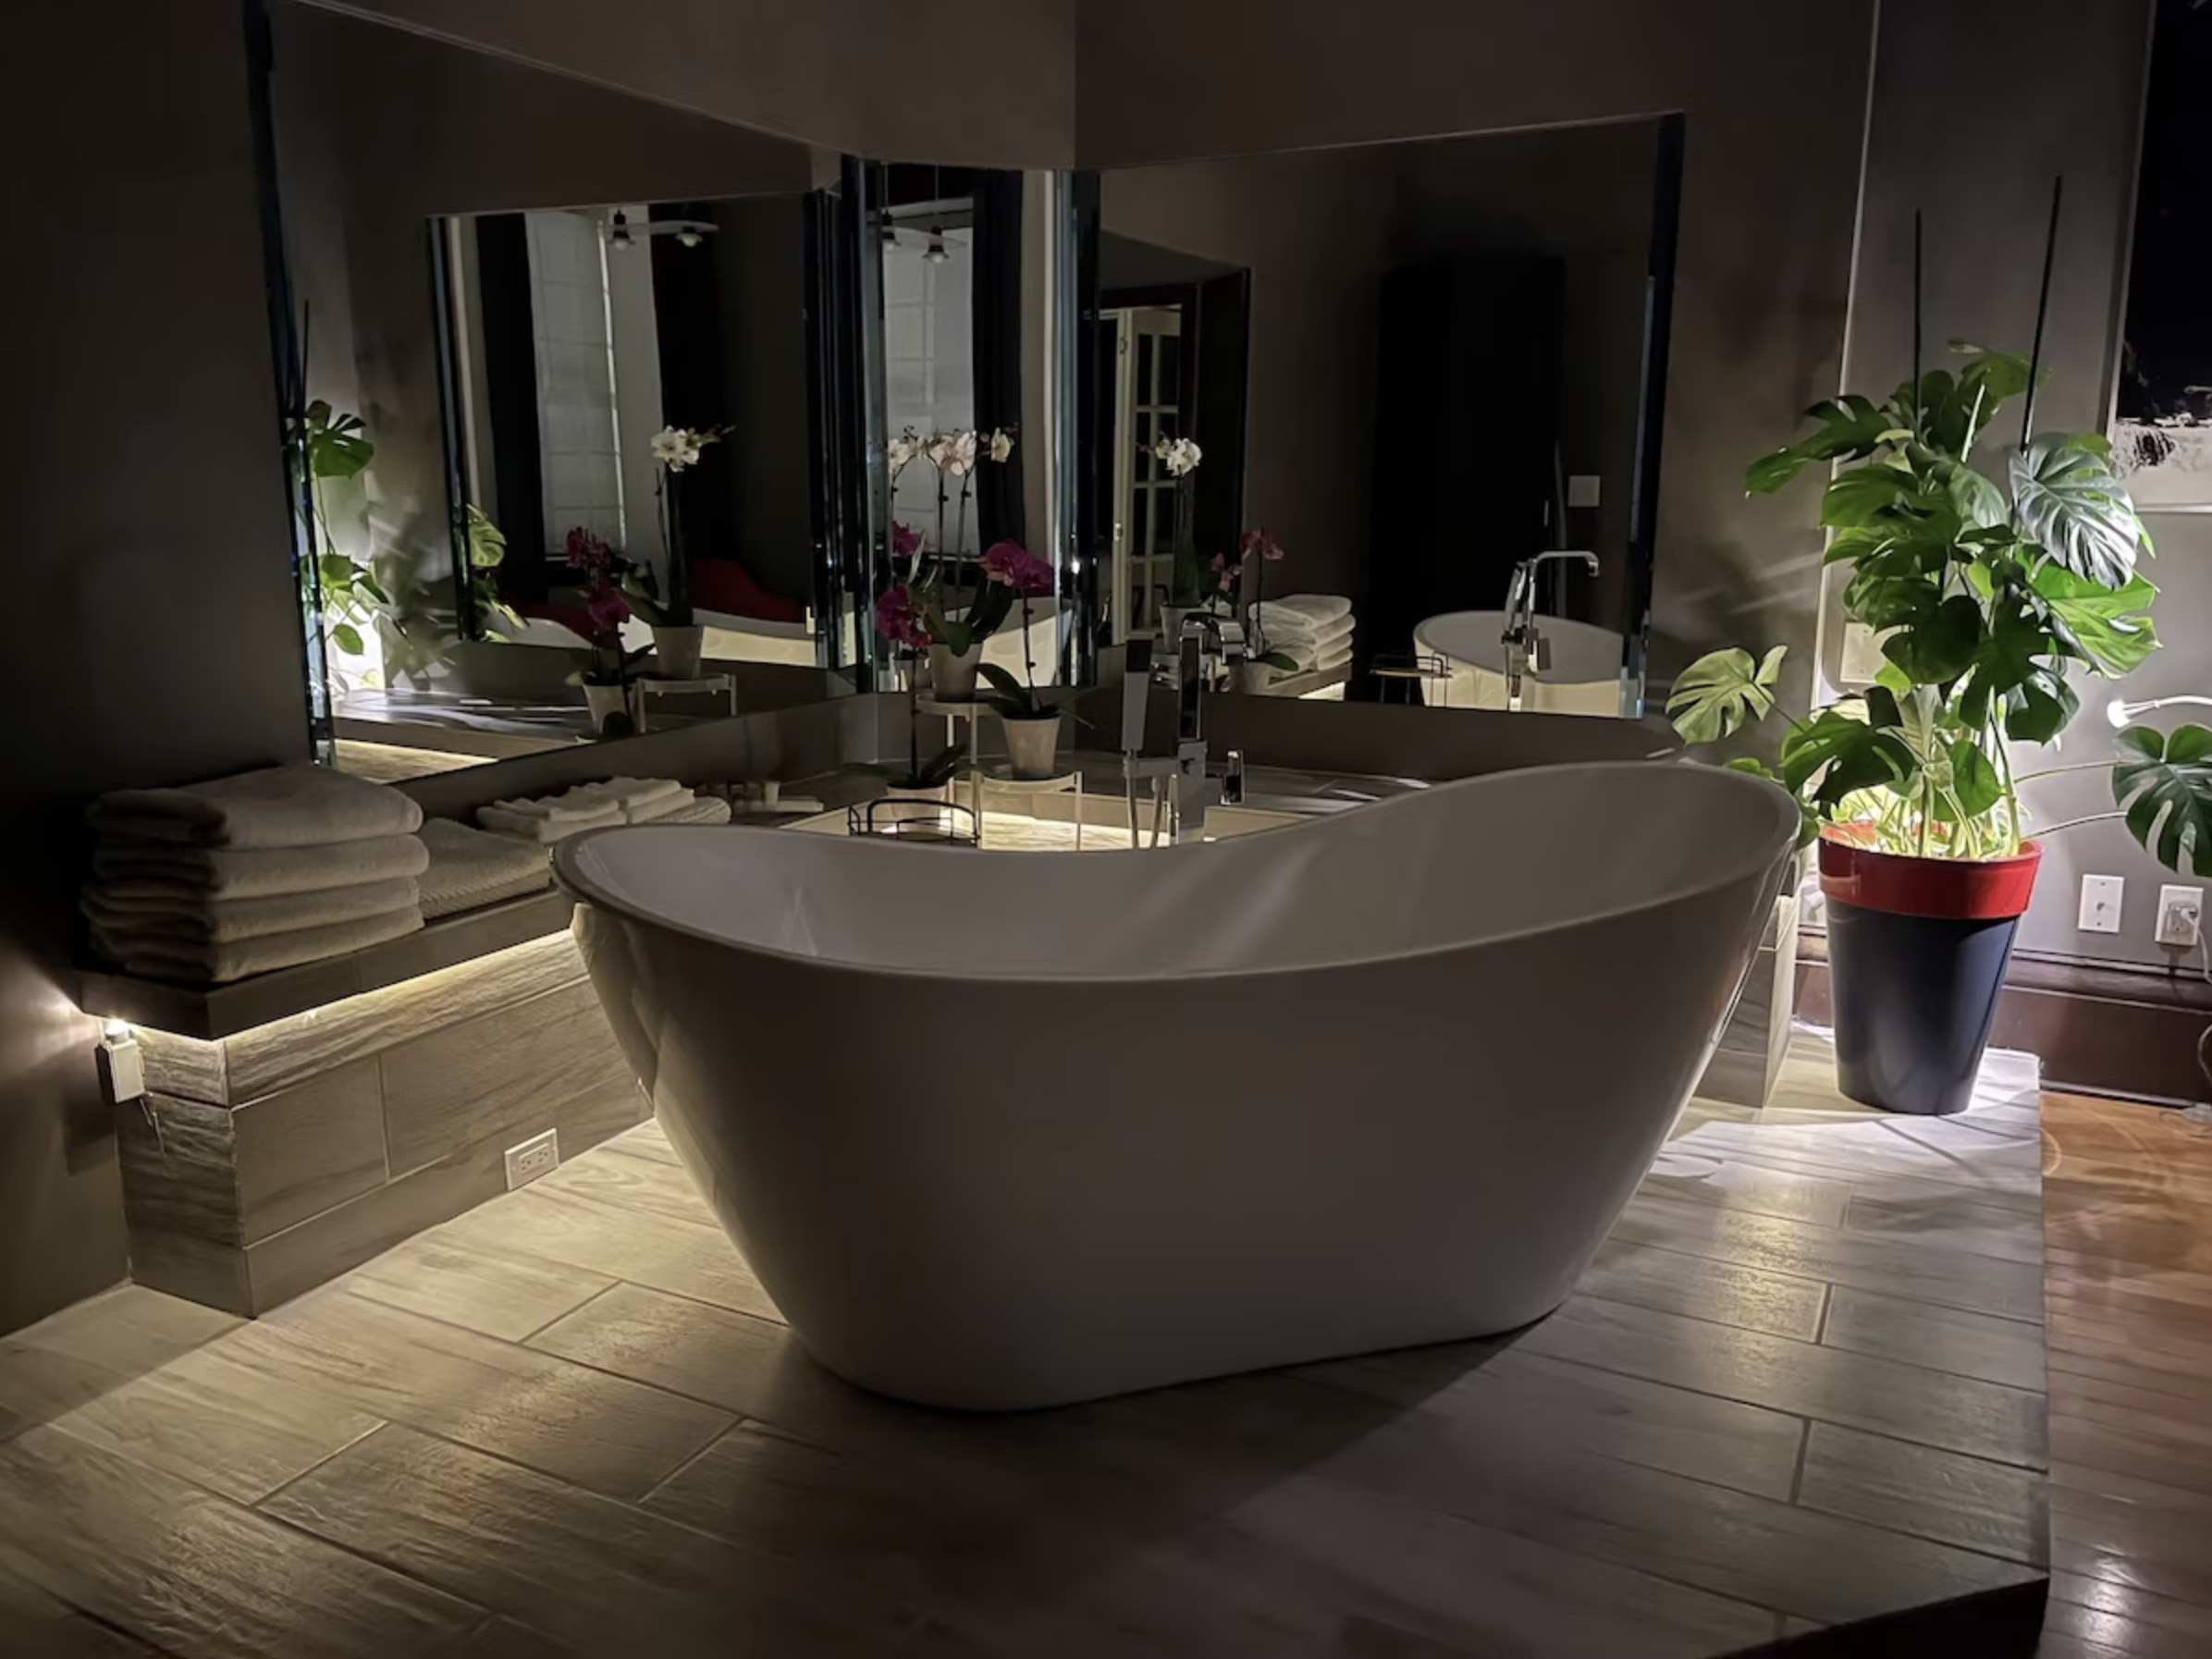 2. Swiss Hotel - Deluxe Room, 1 King Bed | Bathroom